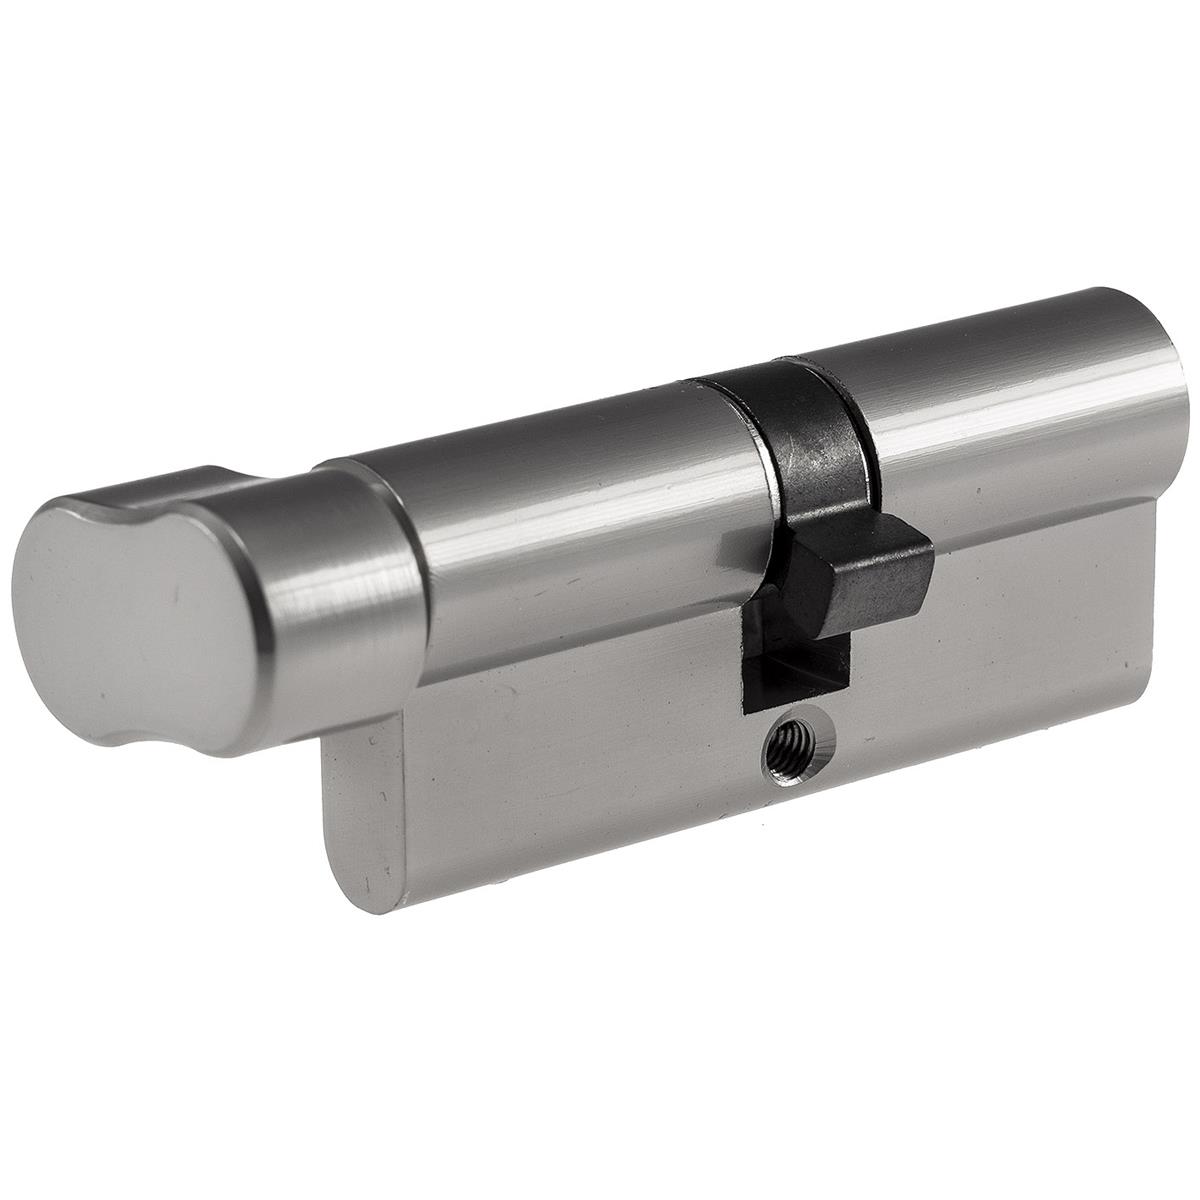 Schließzylinder 70mm (35+35mm) mit KnaufProfil-Zylinder, 5 Sicherheits-Schlüssel